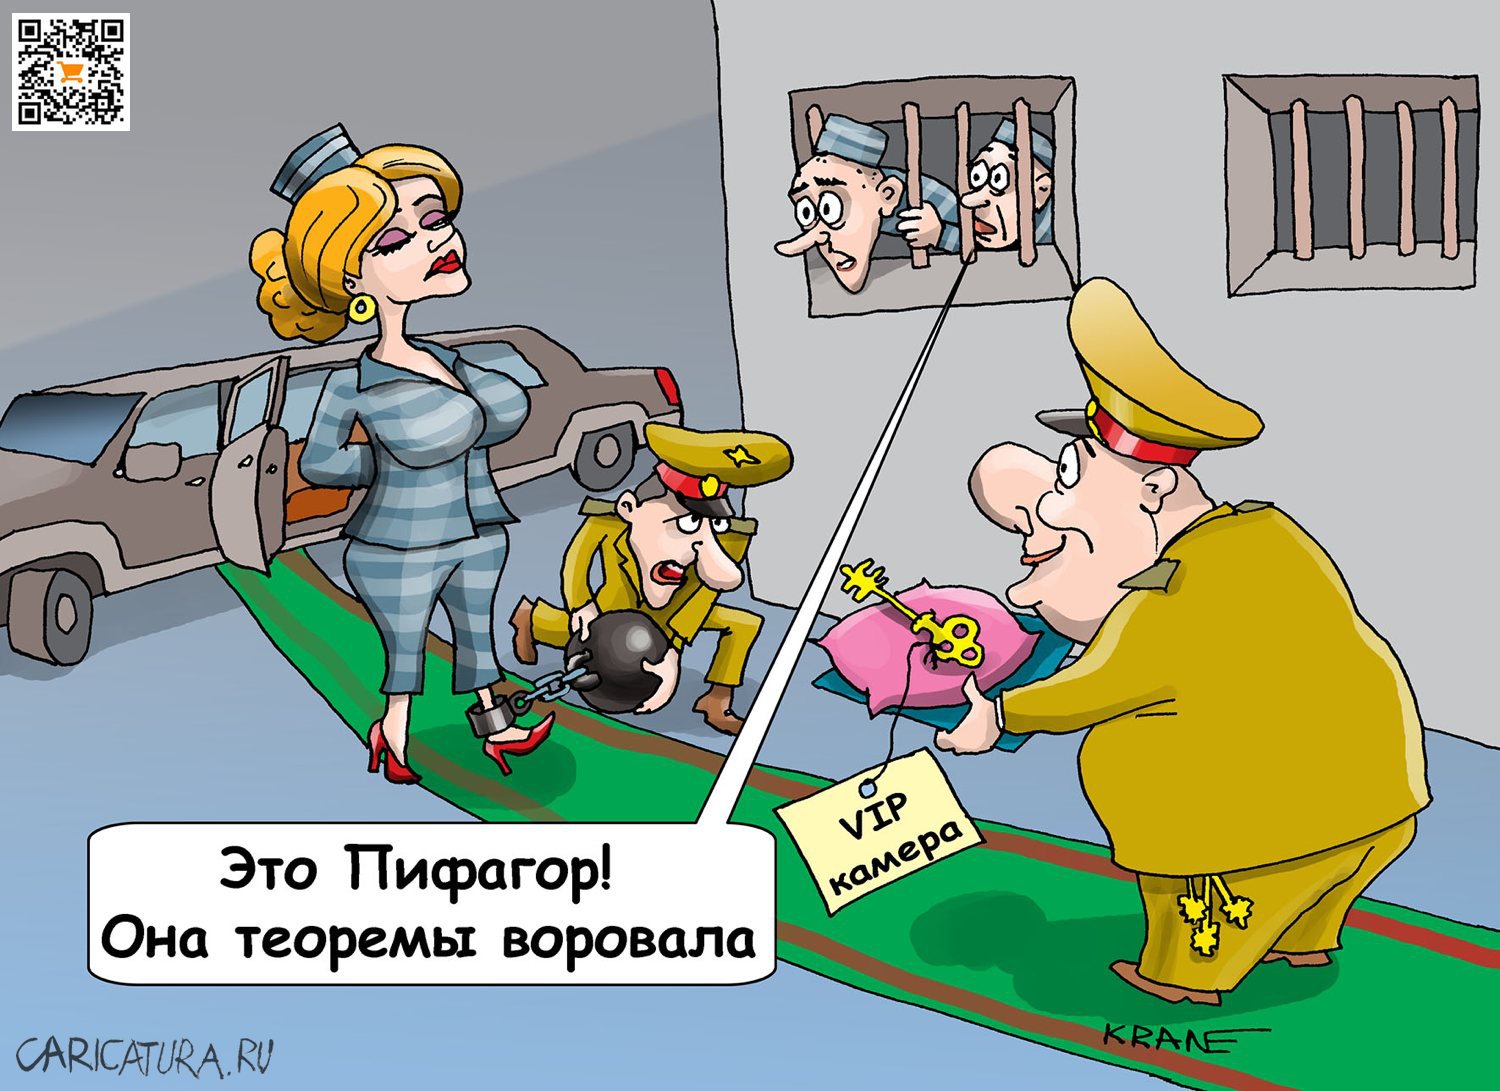 Карикатура "Пифагор под крышей", Евгений Кран